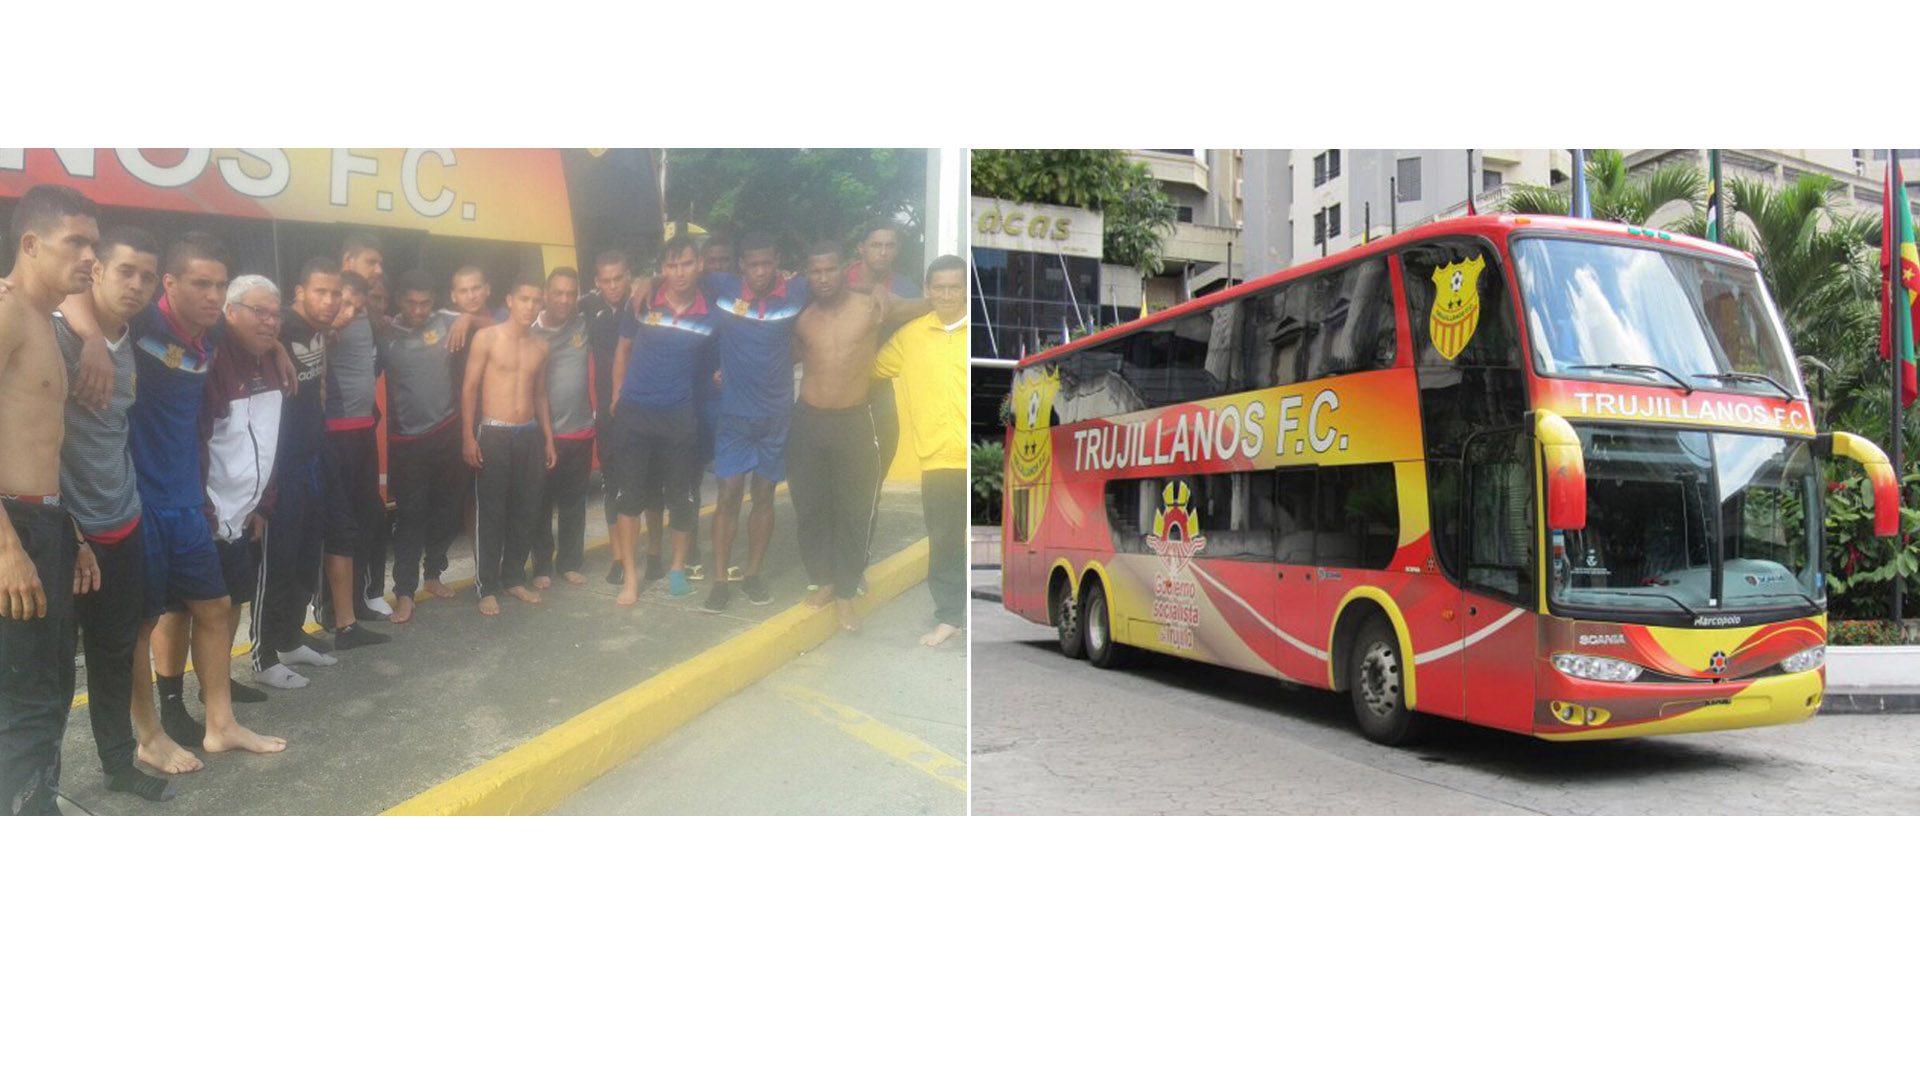 El club de fútbol condenó este tipo de actos que cada vez son más frecuentes en las carreteras venezolanas